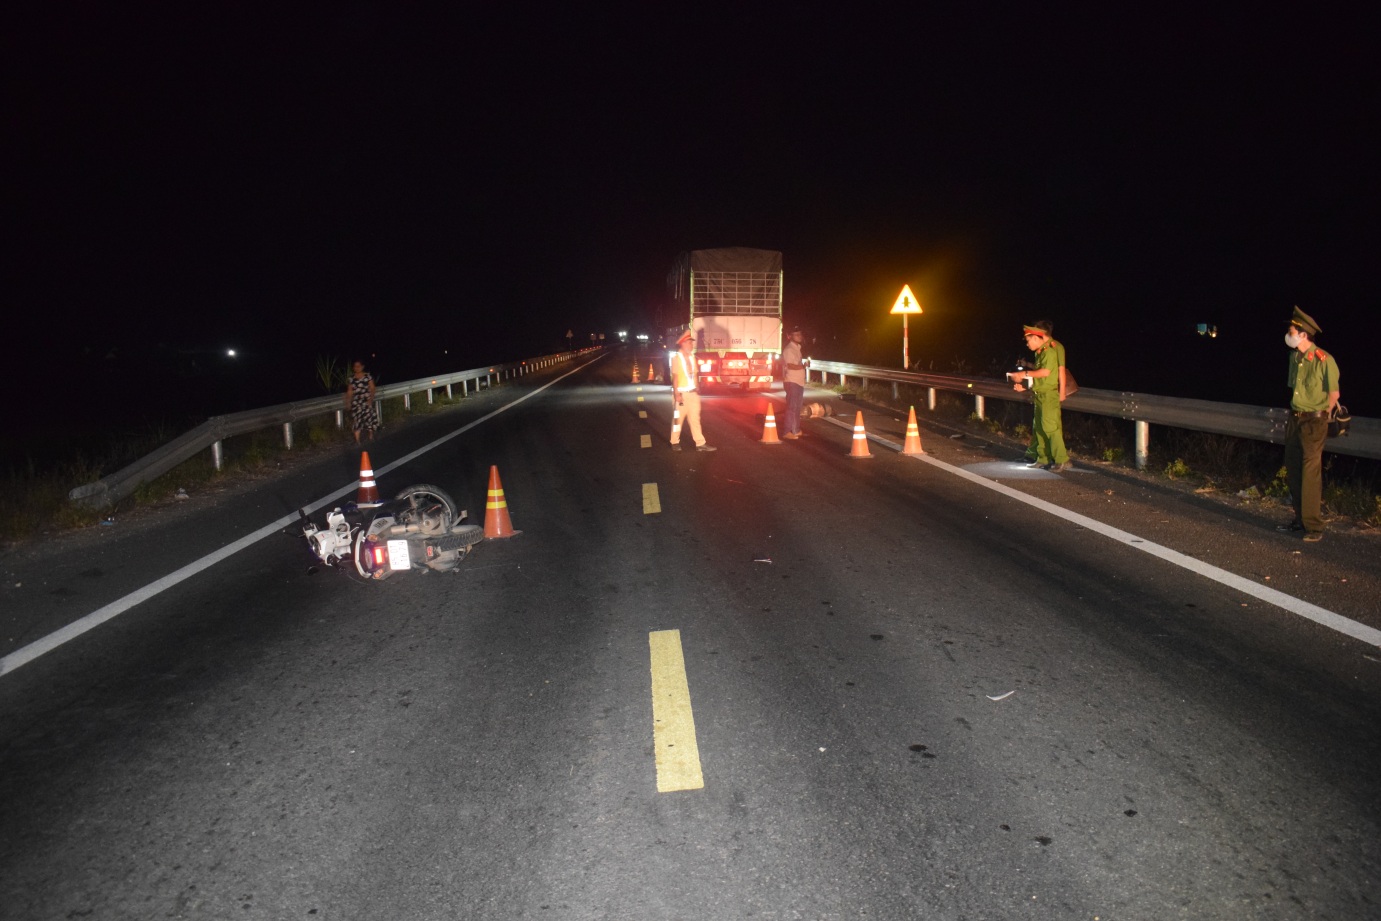 Tai nạn giao thông nghiêm trọng tại đường dẫn cao tốc làm 2 thanh niên chết tại chỗ